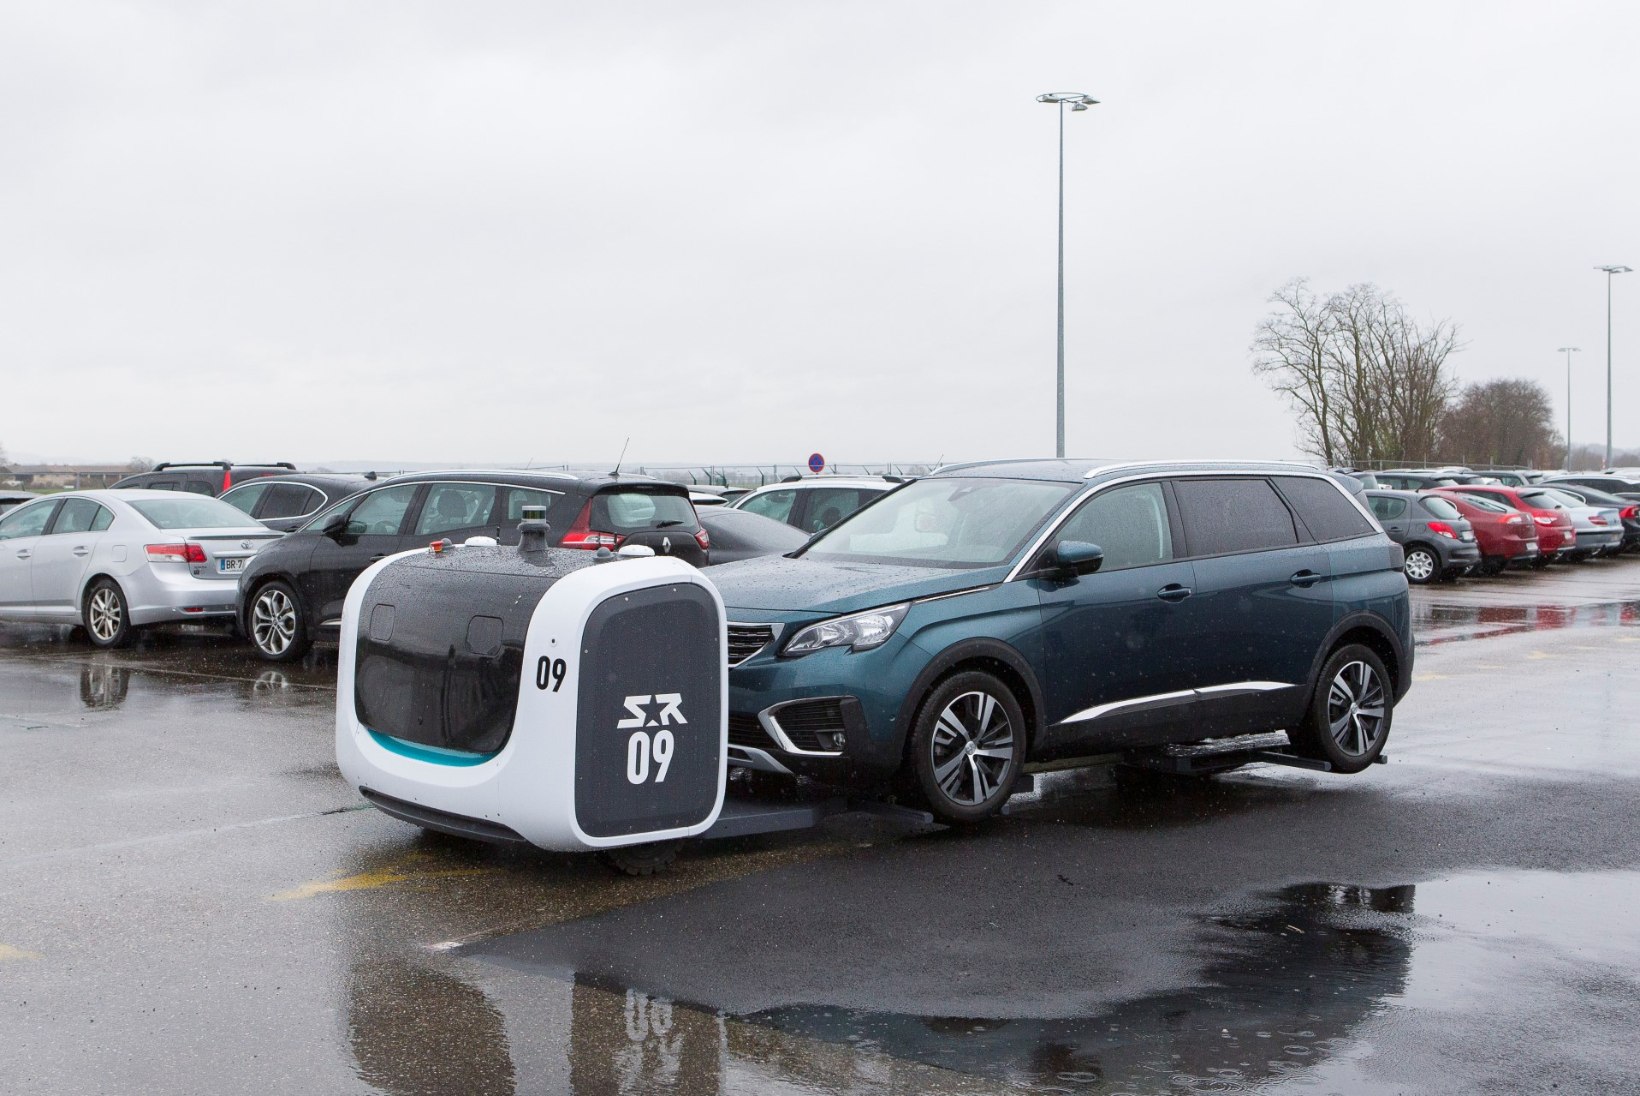 Lyoni lennujaamas pargivad autosid nutikad robotid